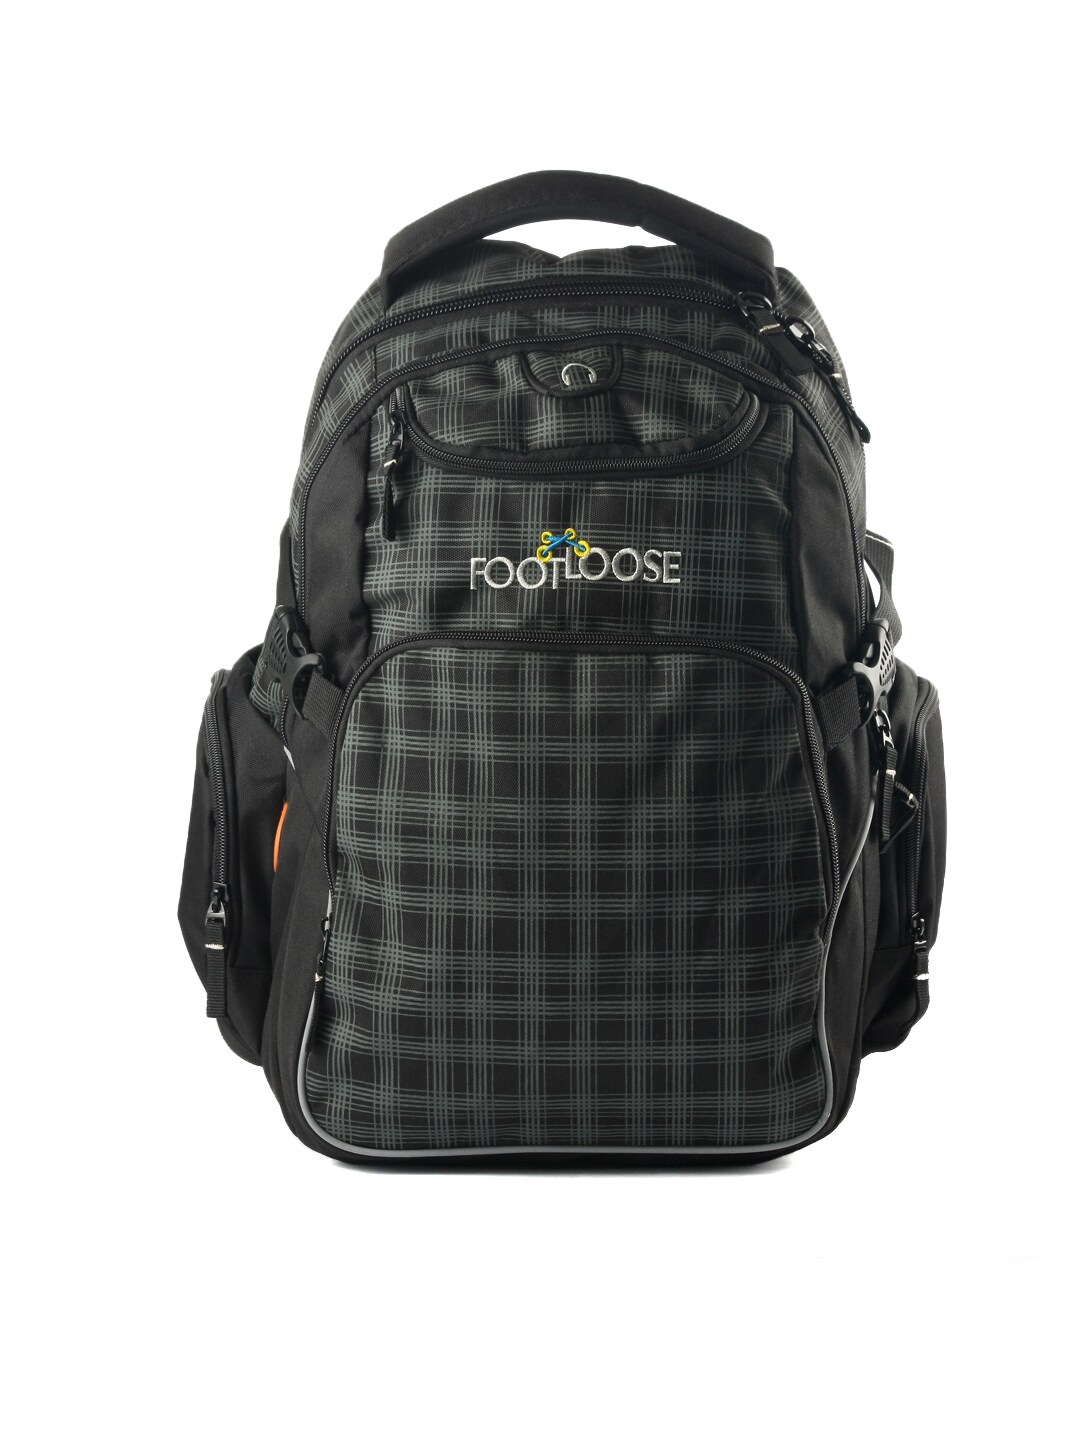 Footloose Black Unisex Chkmate Backpack